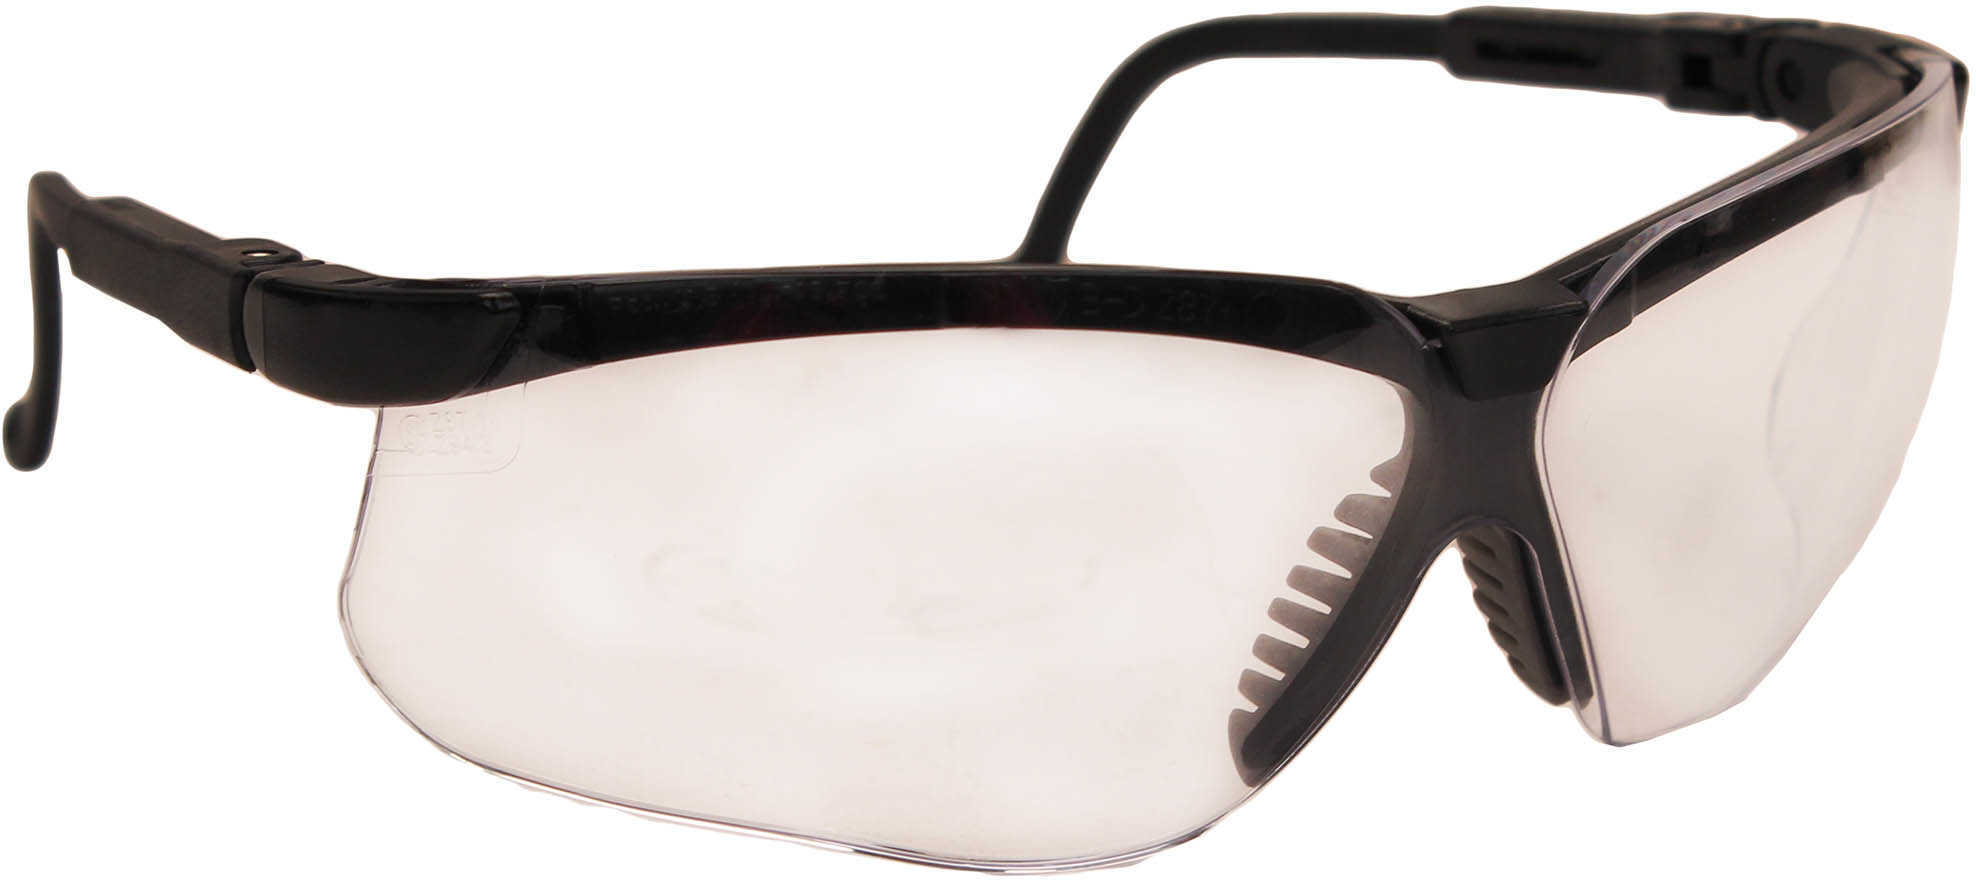 Howard LEIGHT Genesis EYEWEAR Black Frame Clear Lens